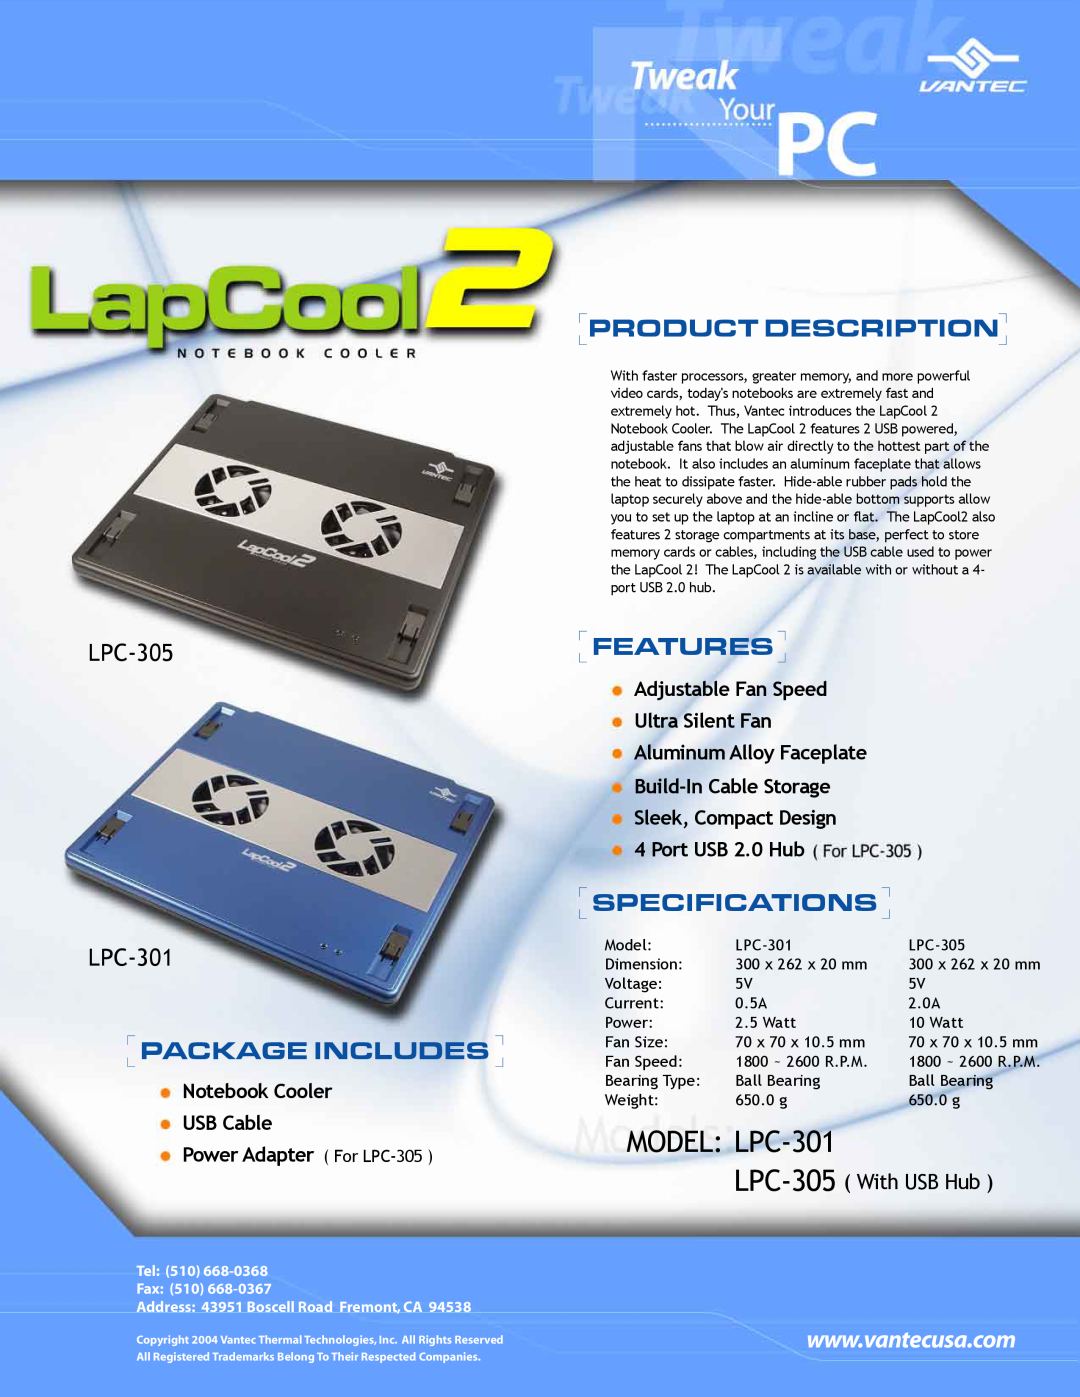 Vantec specifications MODEL LPC-301, Package Includes, Product Description, Features, Specifications, LPC-305 LPC-301 